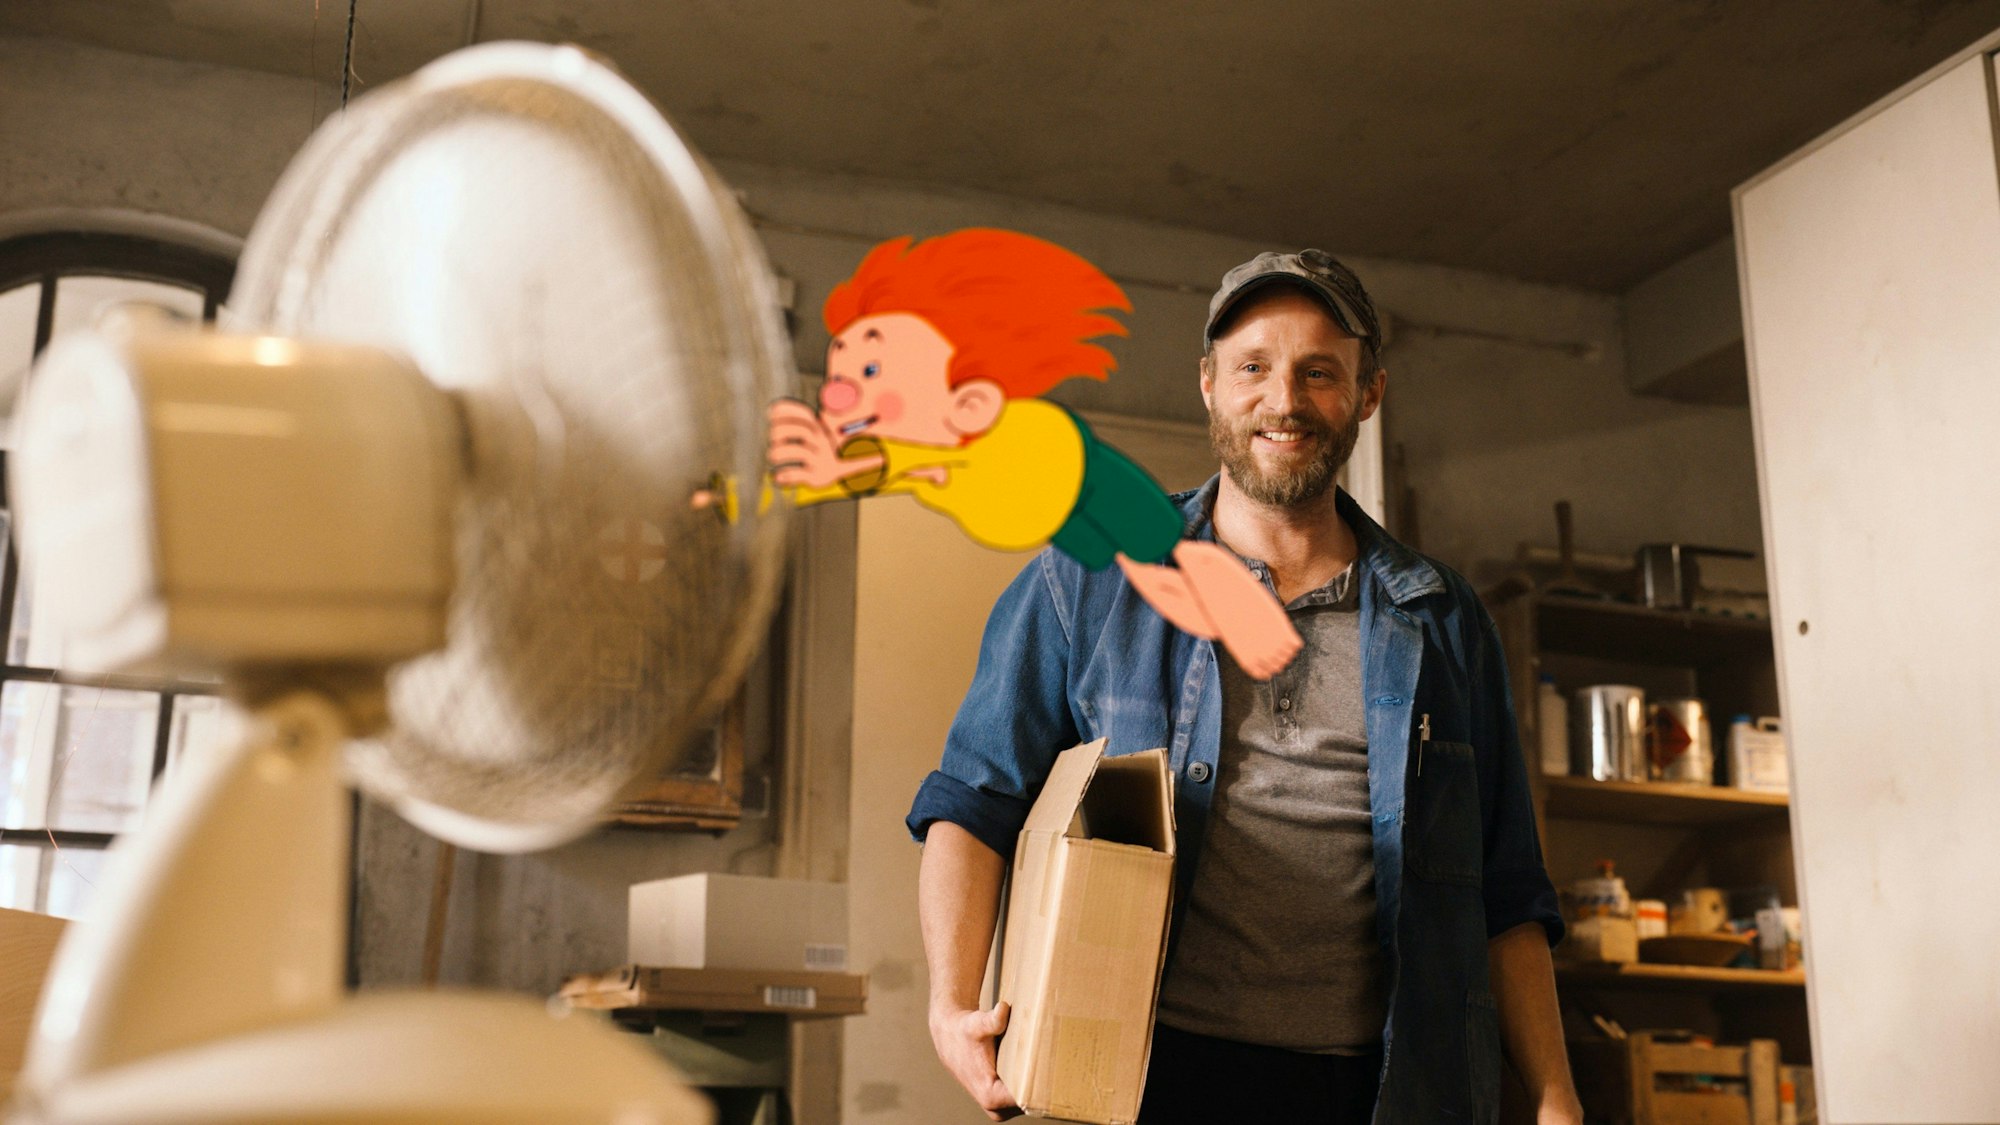 Florian Brückner als Florian, Neffe von Meister Eder, steht mit einer Kappe in einer Szene des Films „Neue Geschichten vom Pumuckl“ in der Werkstatt, während der Pumuckl sich an einem Ventilator festhält, der ihn wegbläst.